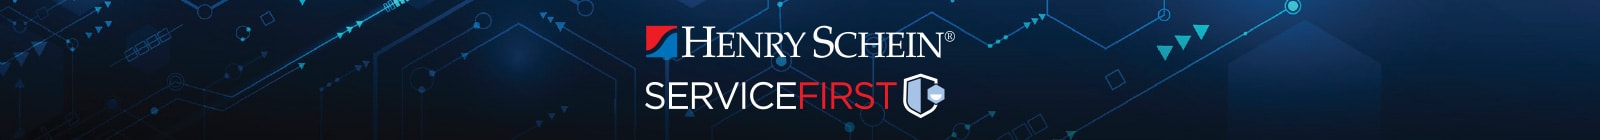 Henry Schein ServiceFirst